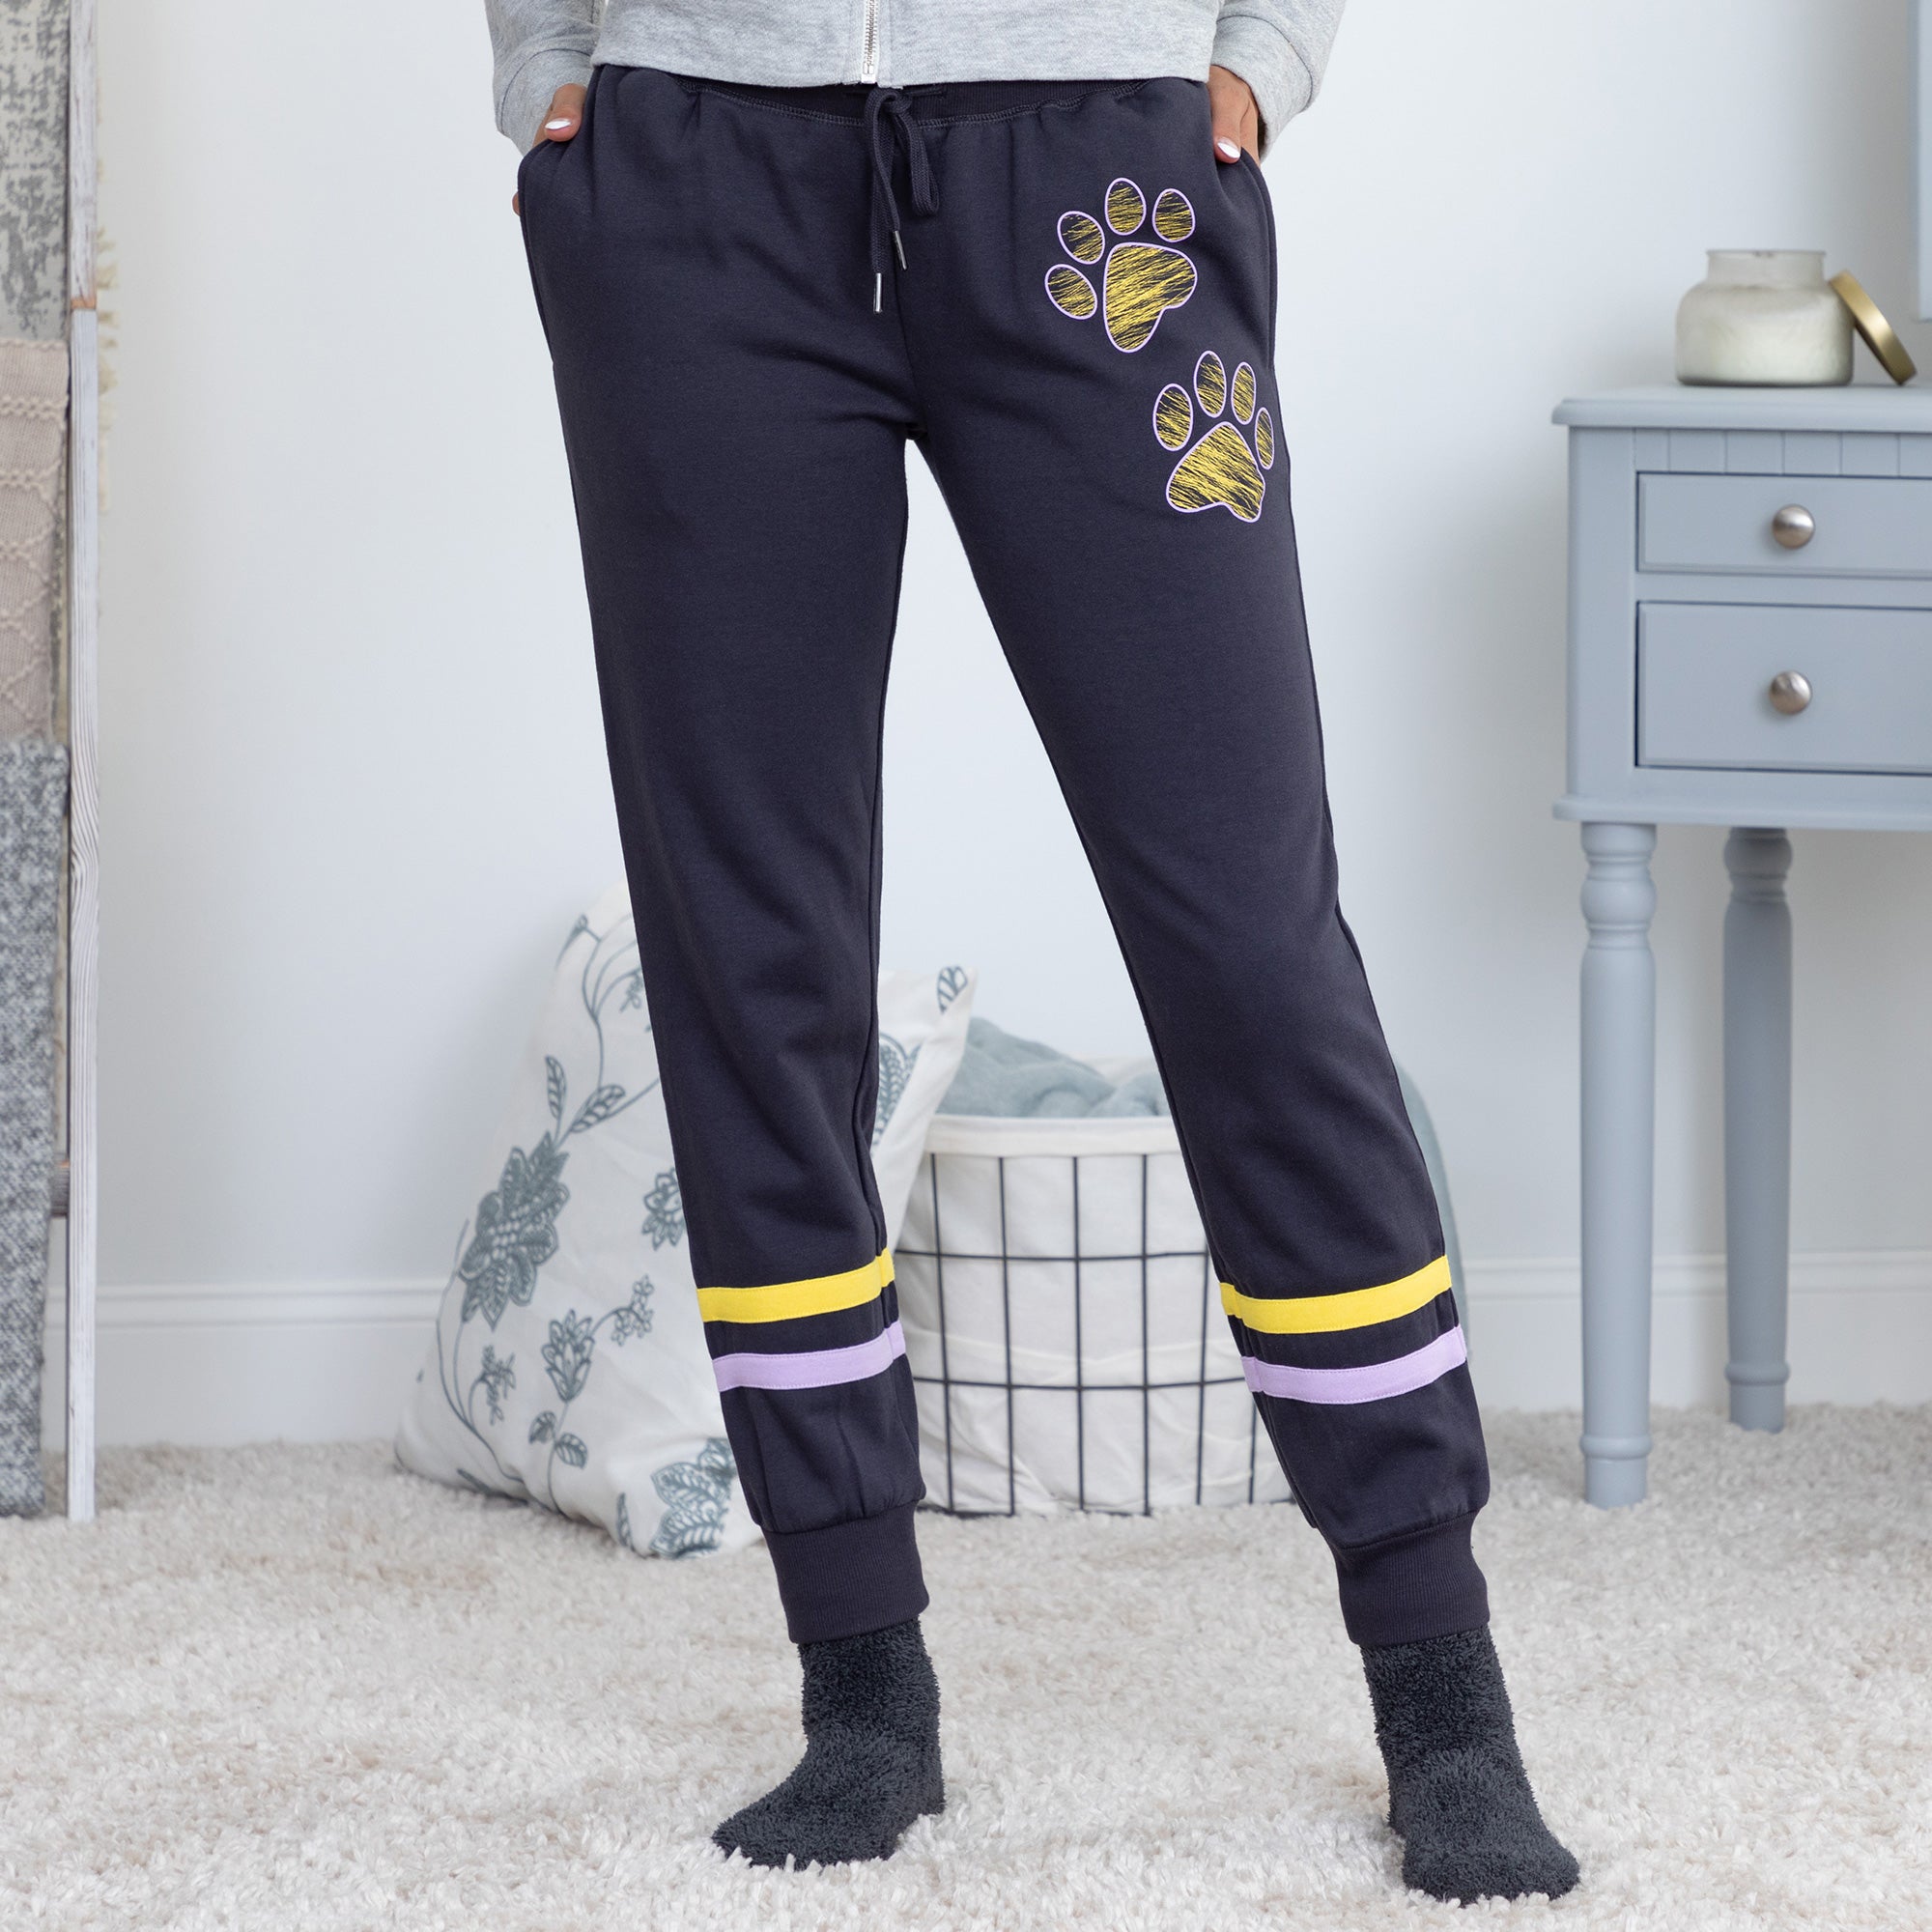 Paw Print Athletic Stripe Sweatpants - Gray - XL